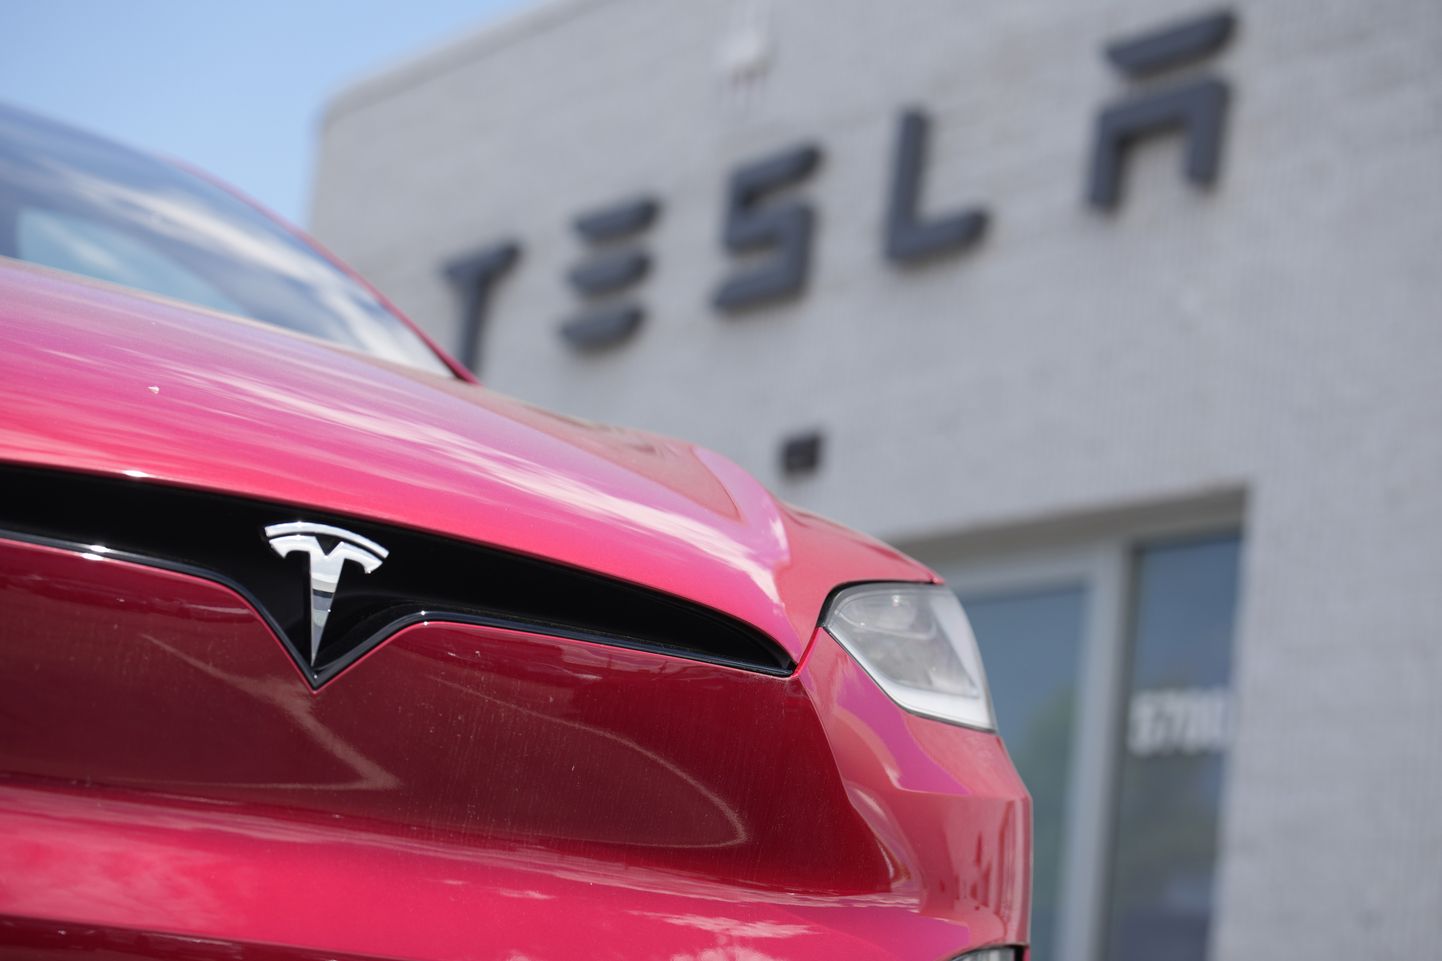 Teslade müük Euroopas kasvab meeletus tempos.